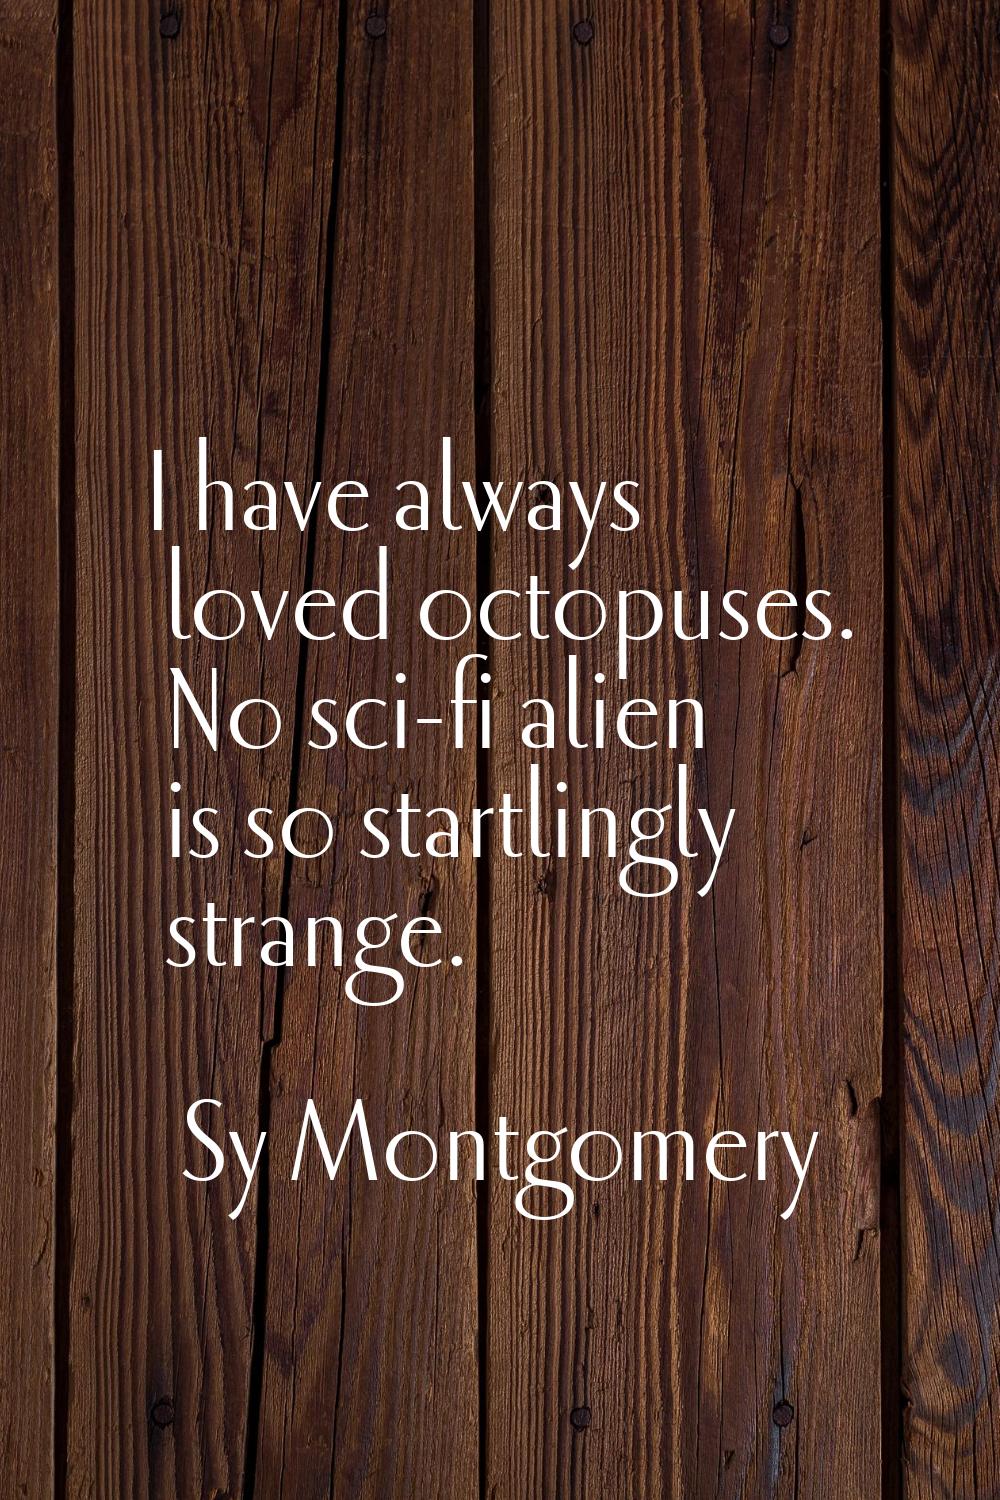 I have always loved octopuses. No sci-fi alien is so startlingly strange.